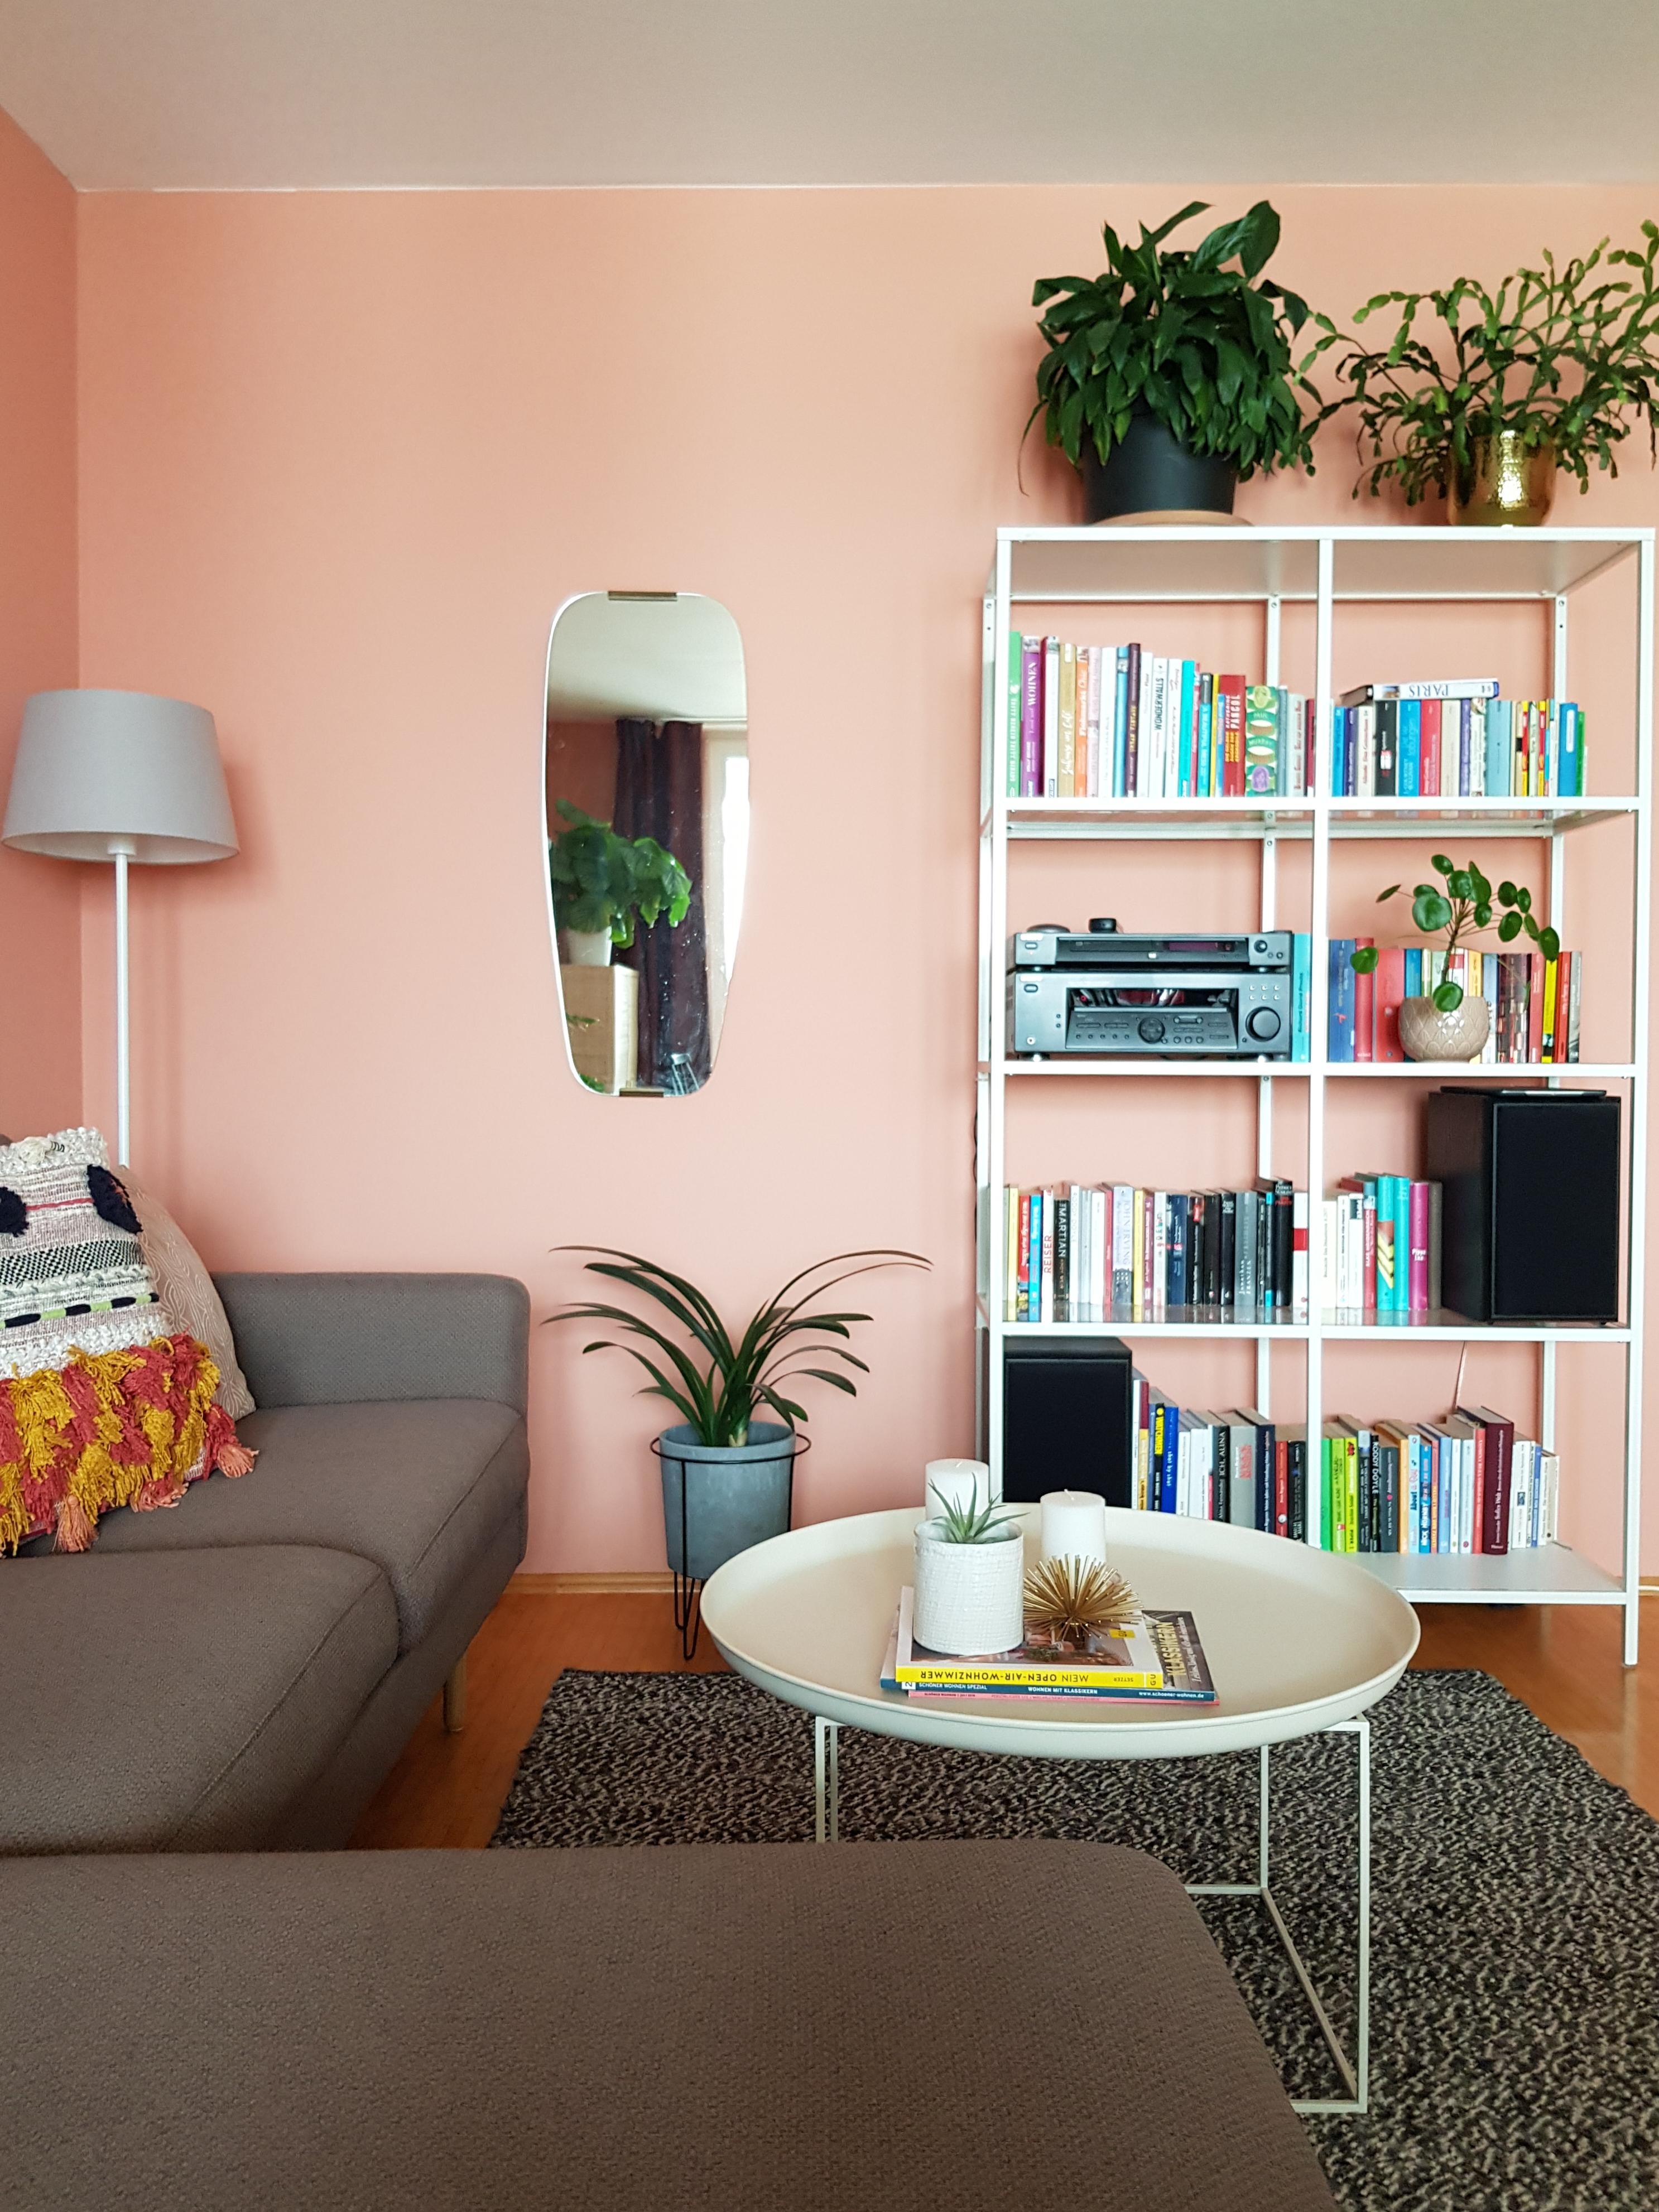 Unsere Multimedia-Ecke im #wohnzimmer - zum Lesen, netflixen oder Musikhören. #wandfarbe #bücherregal #couch #spiegel